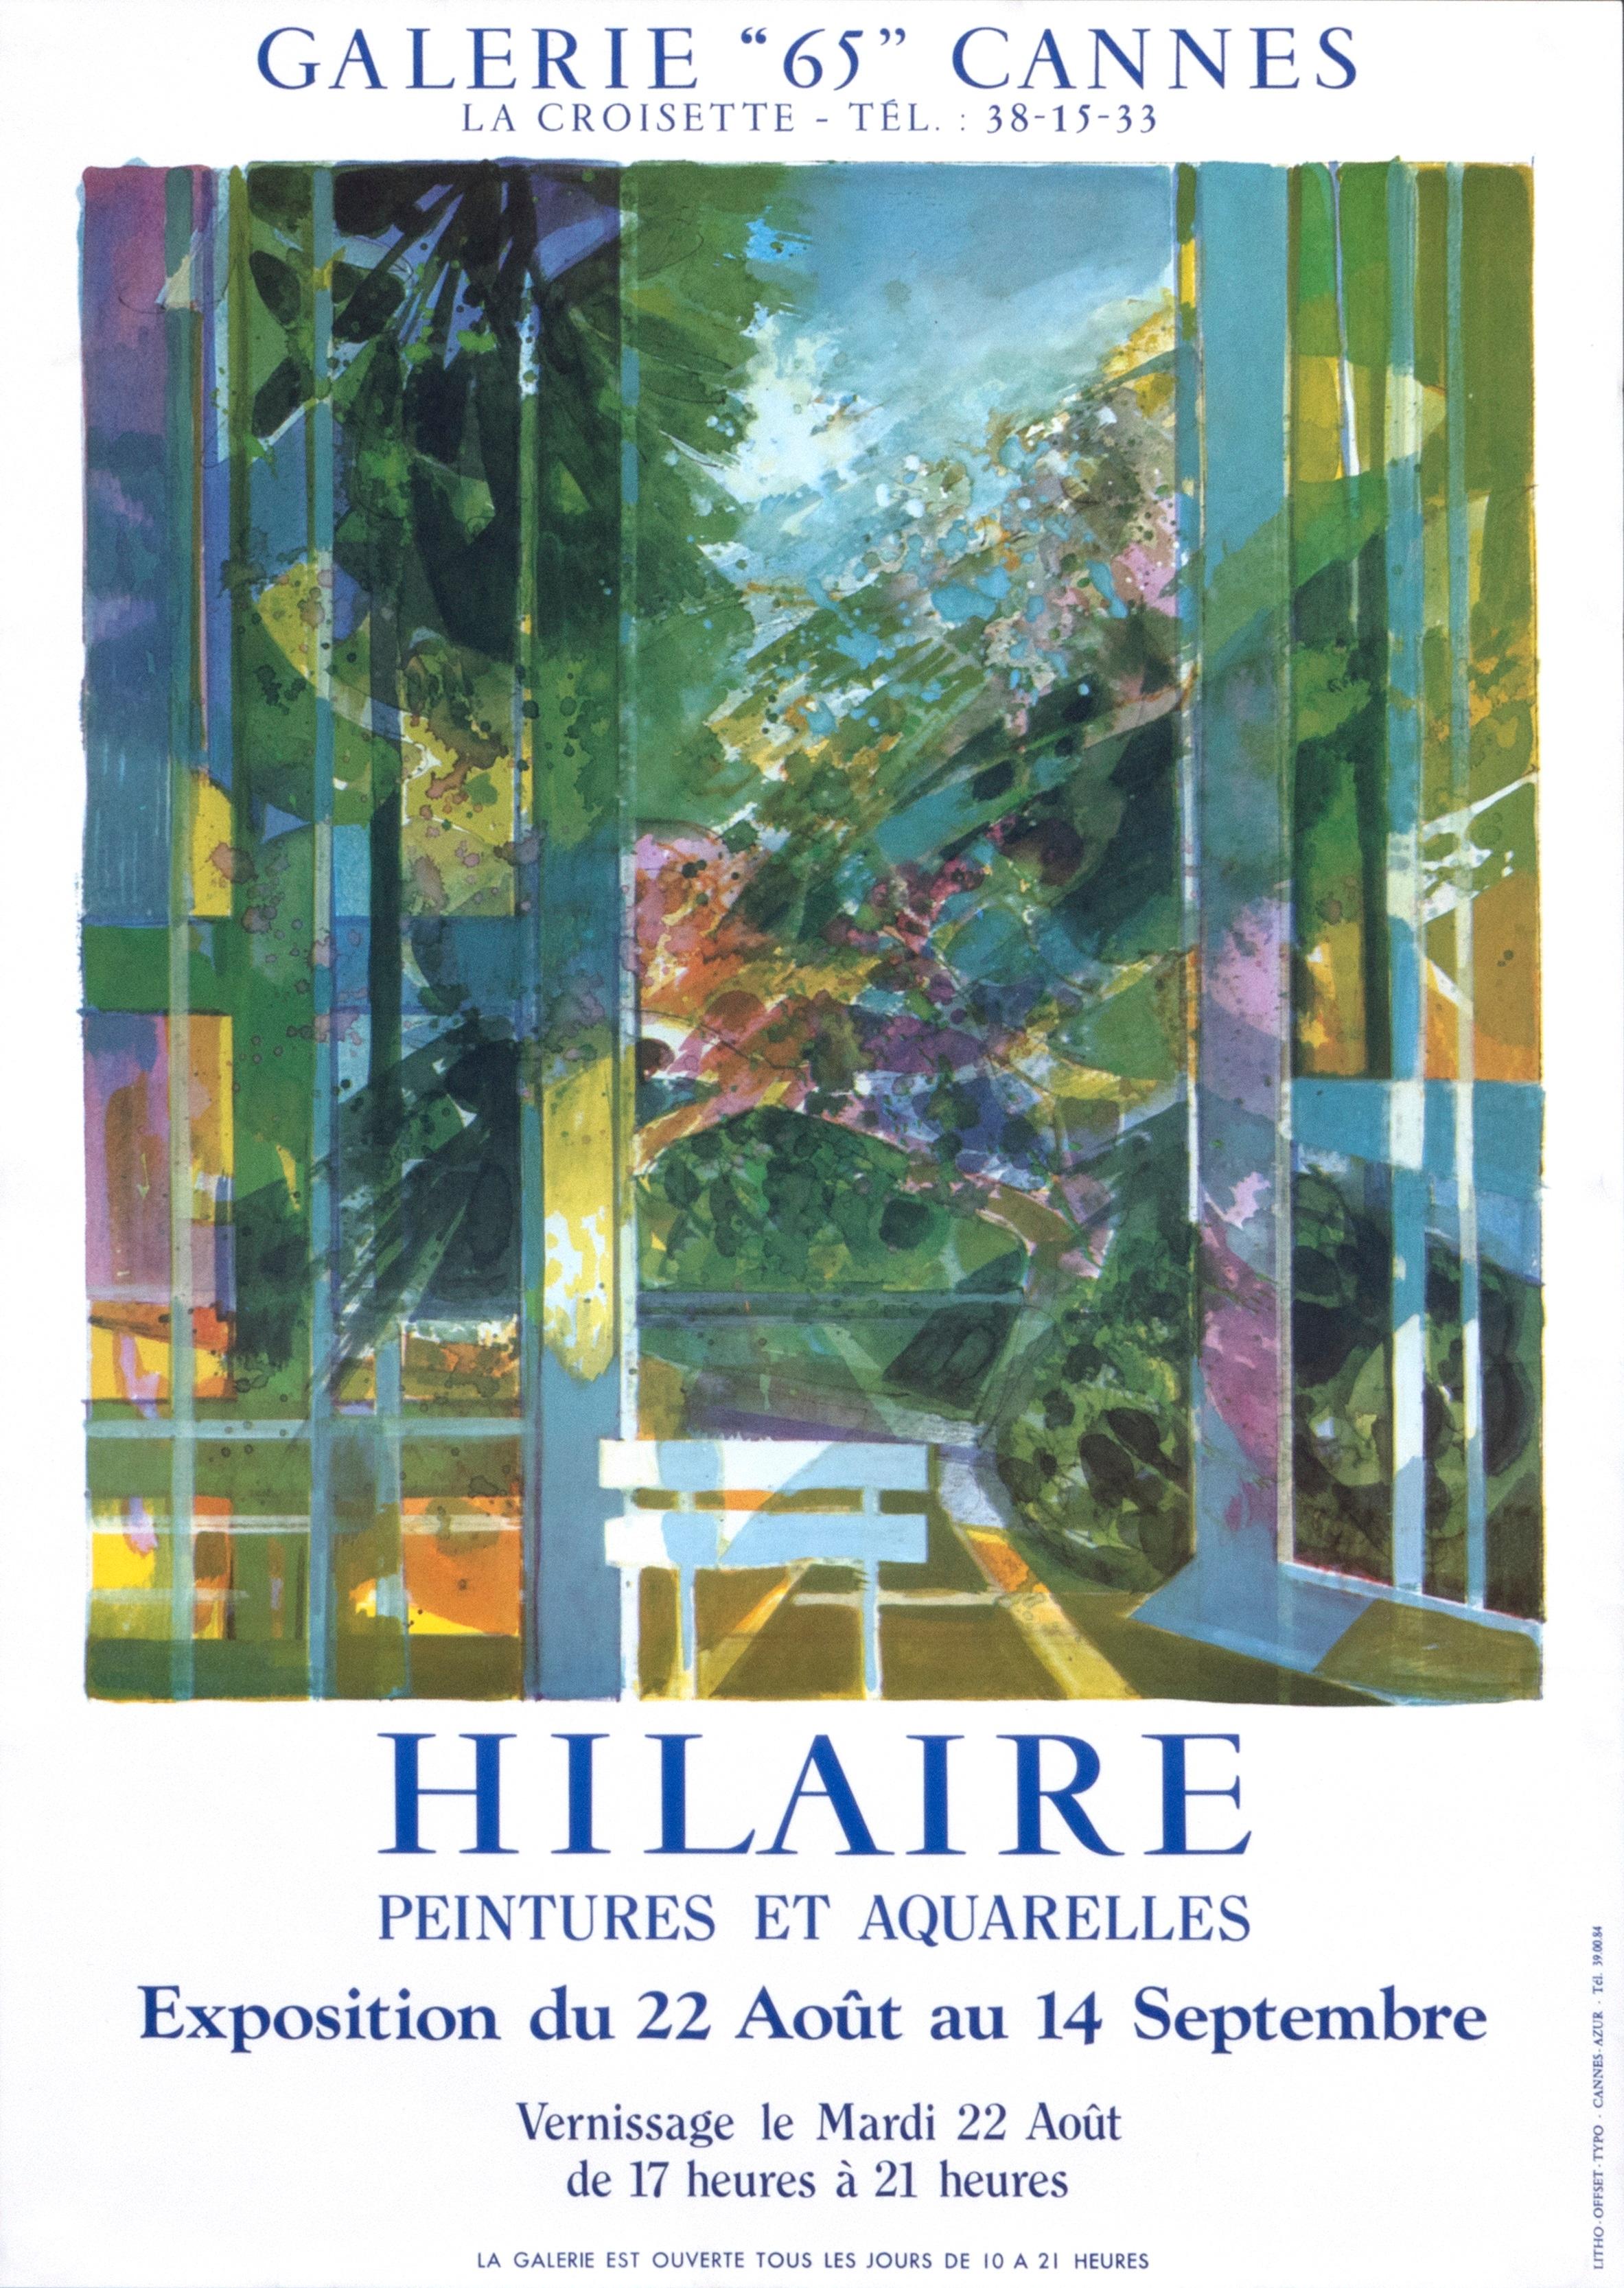 "Hilaire - Peintures et Aquarelles - Cannes" Landscape French Exhibition Poster